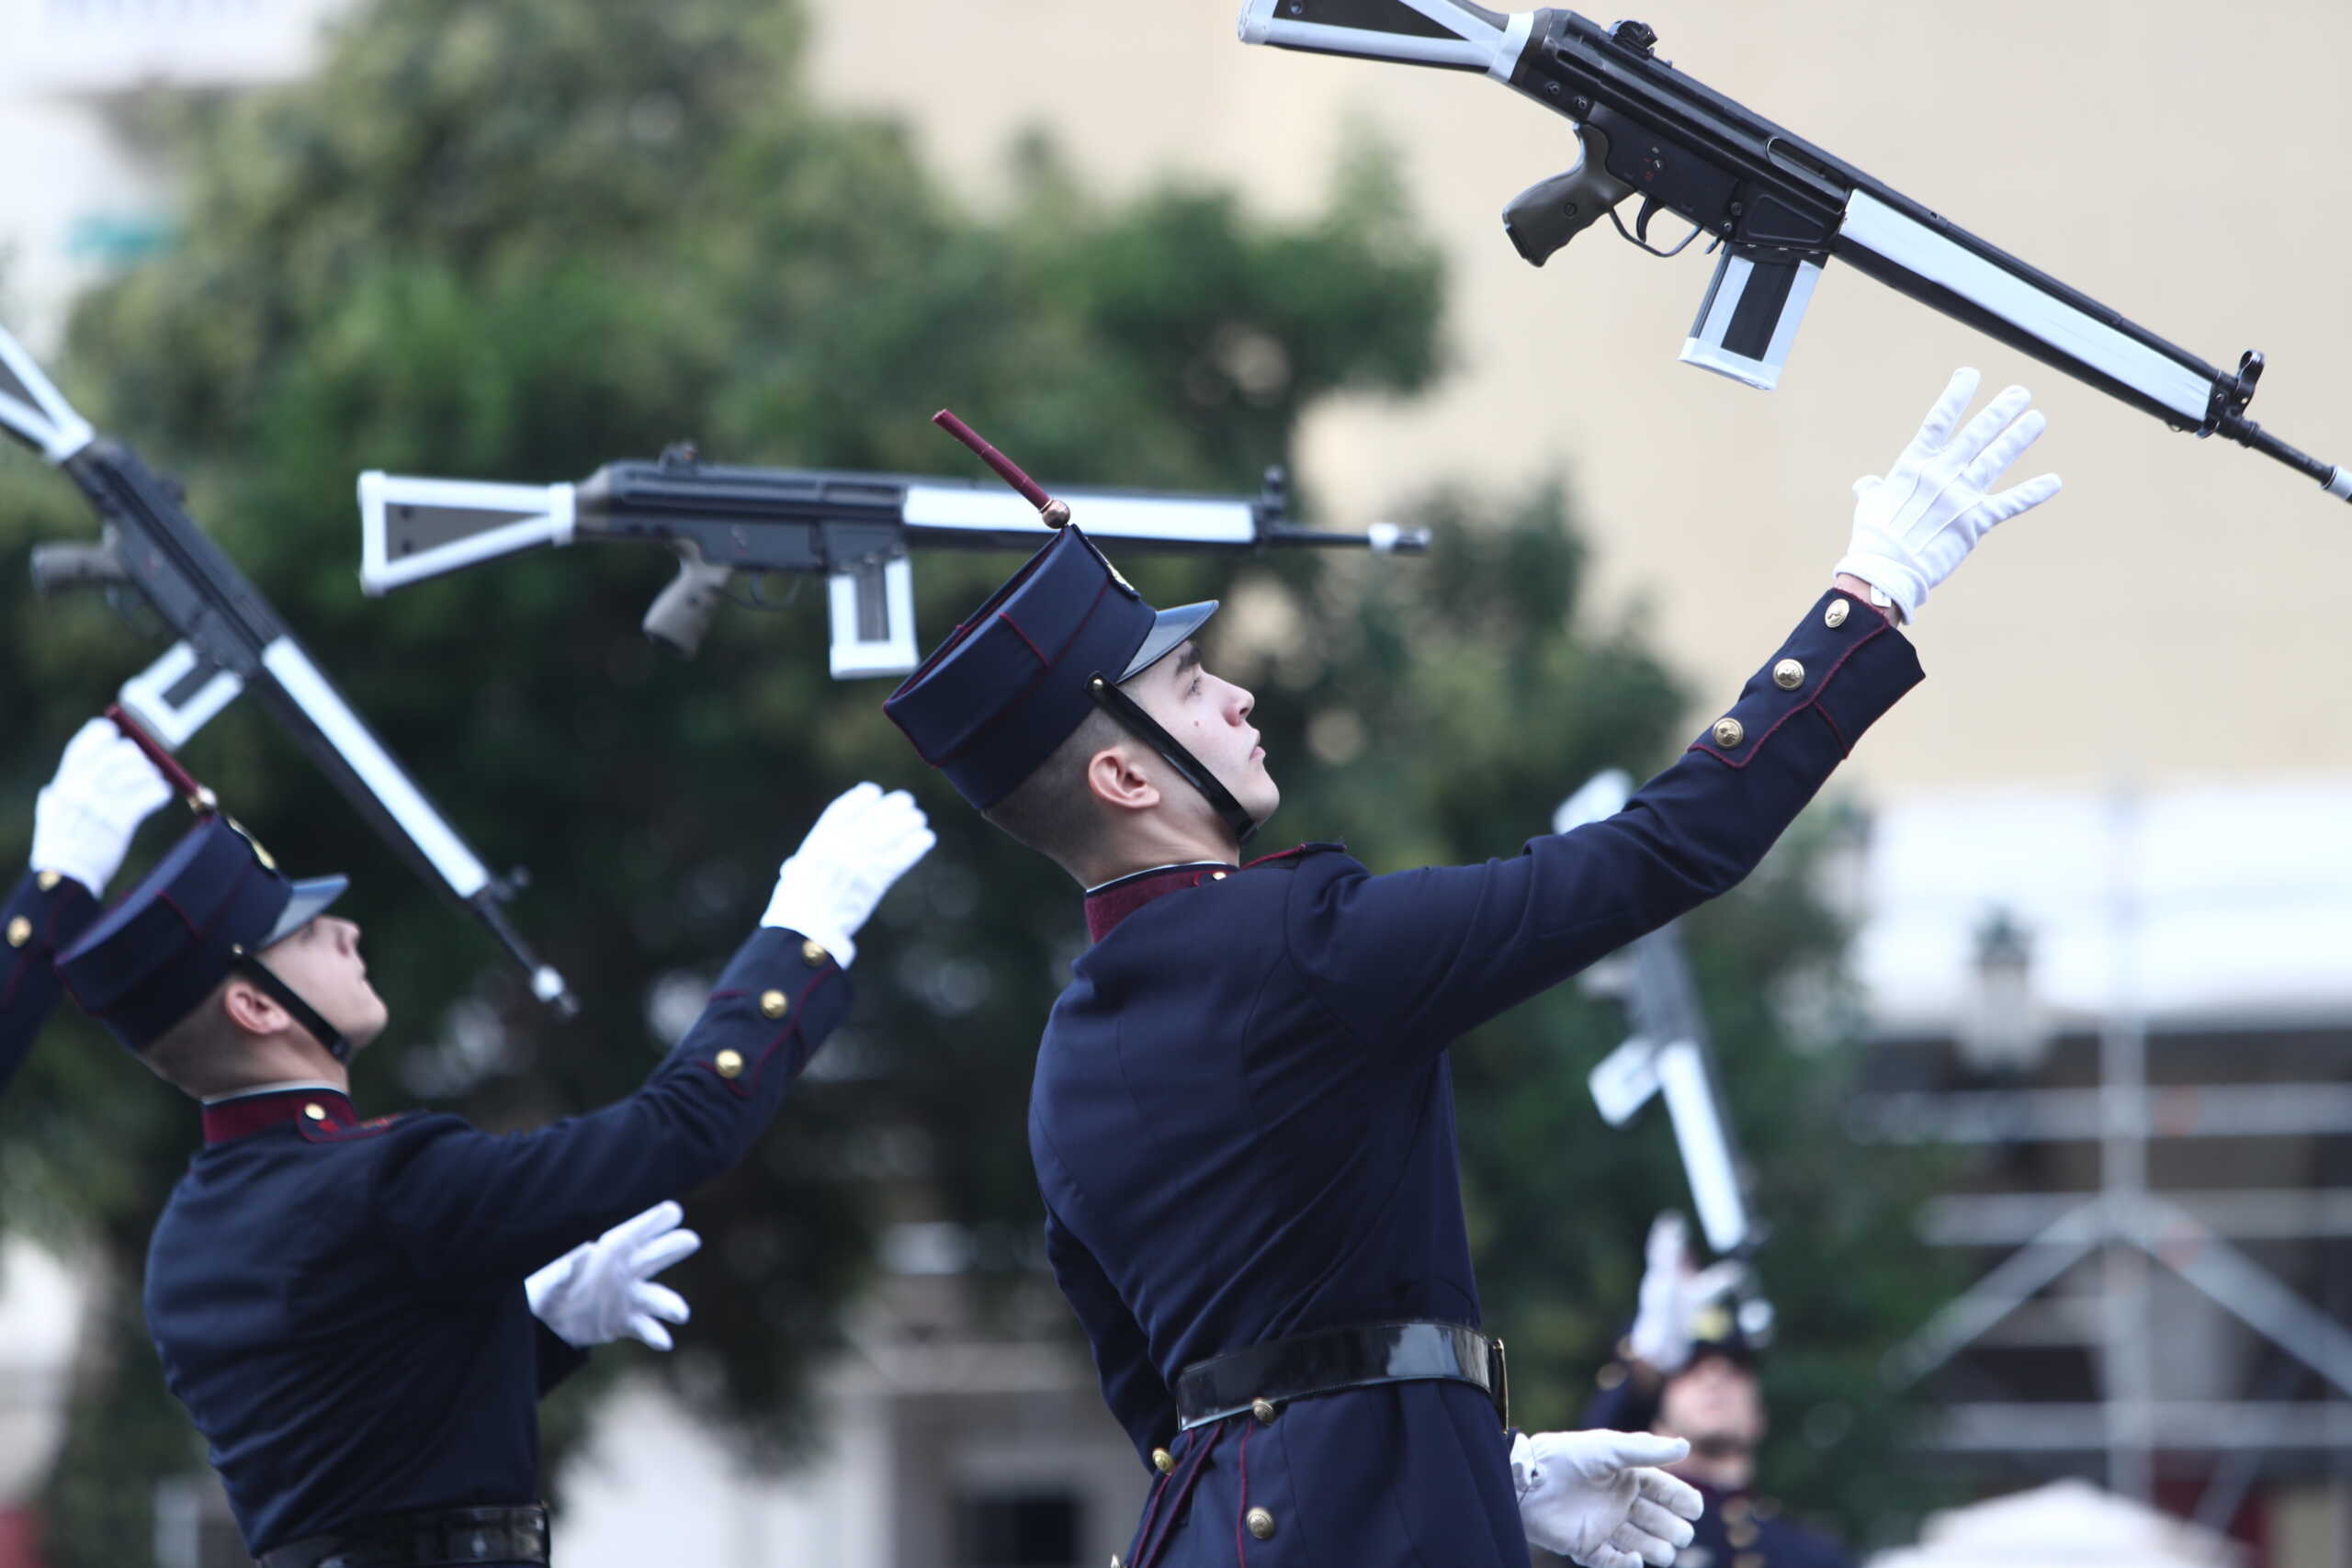 Θεσσαλονίκη: Εντυπωσιακή επίδειξη με όπλα από σπουδαστές τις ΣΣΑΣ και το «Phantom of the Opera» από την μπάντα της Πολεμικής Αεροπορίας